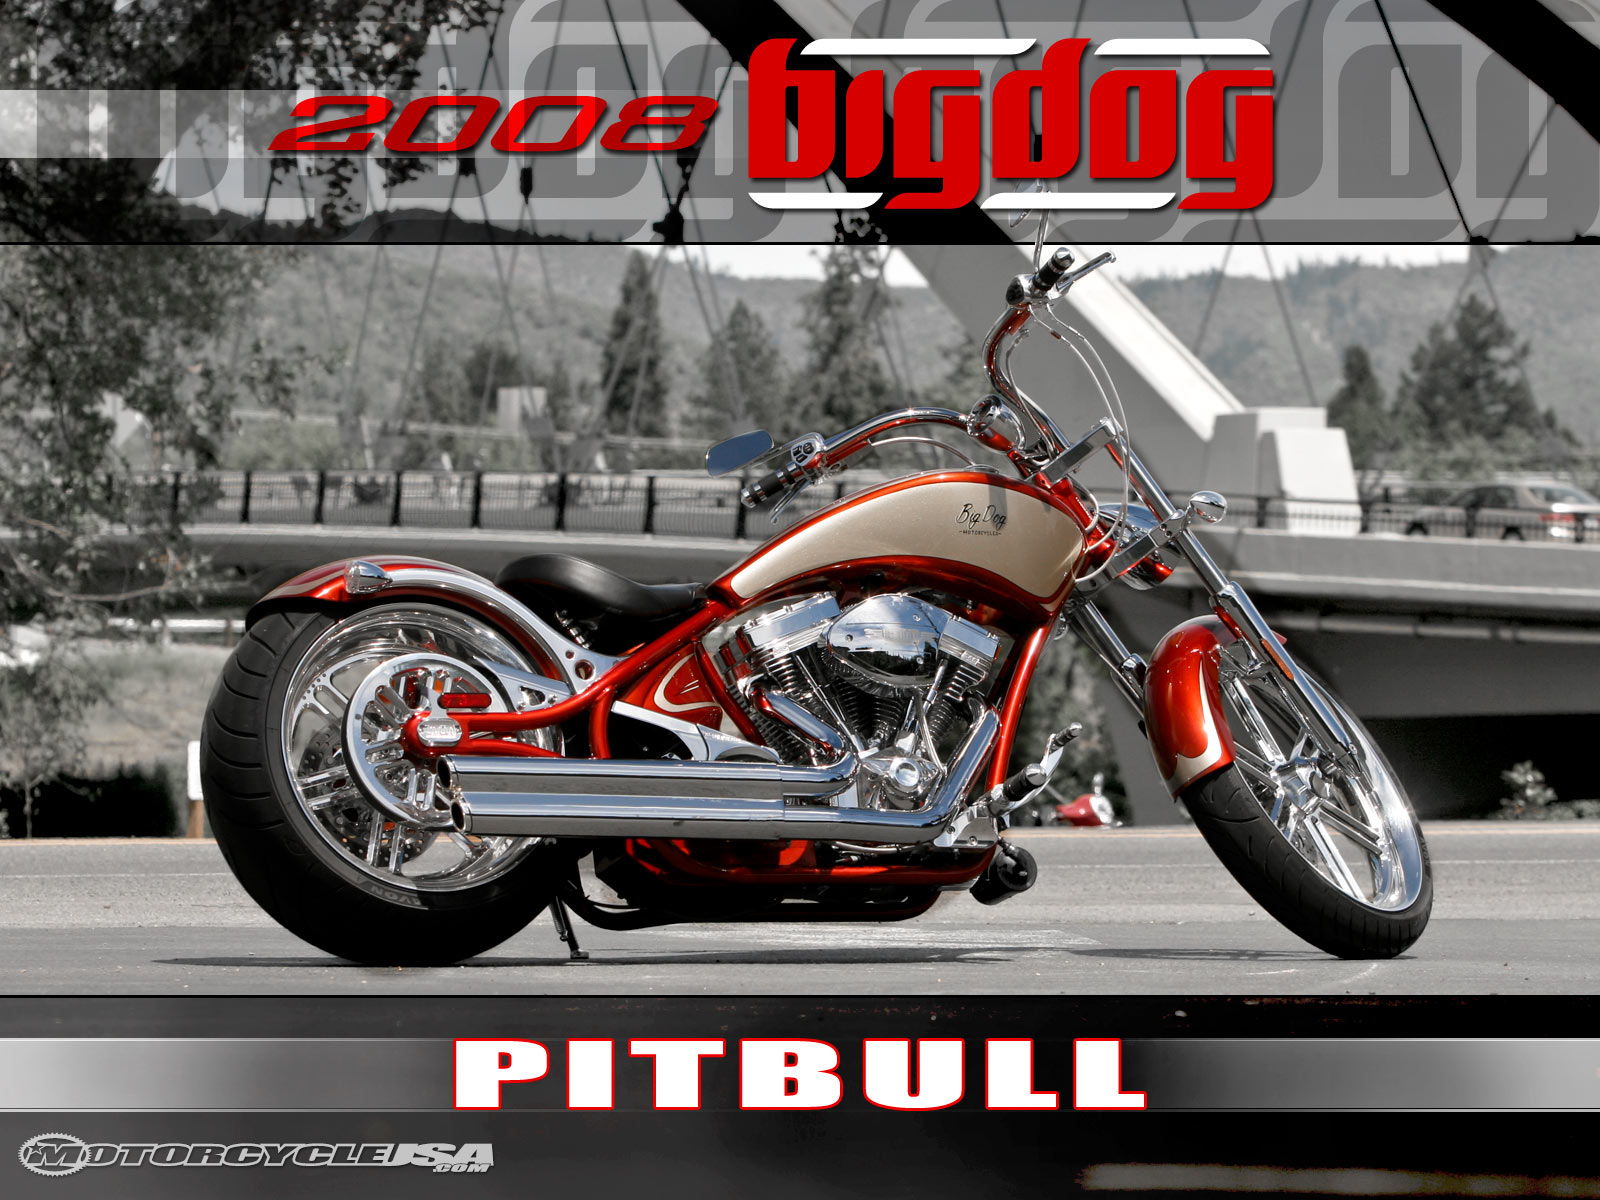 Big Dog Pitbull 2011 #1